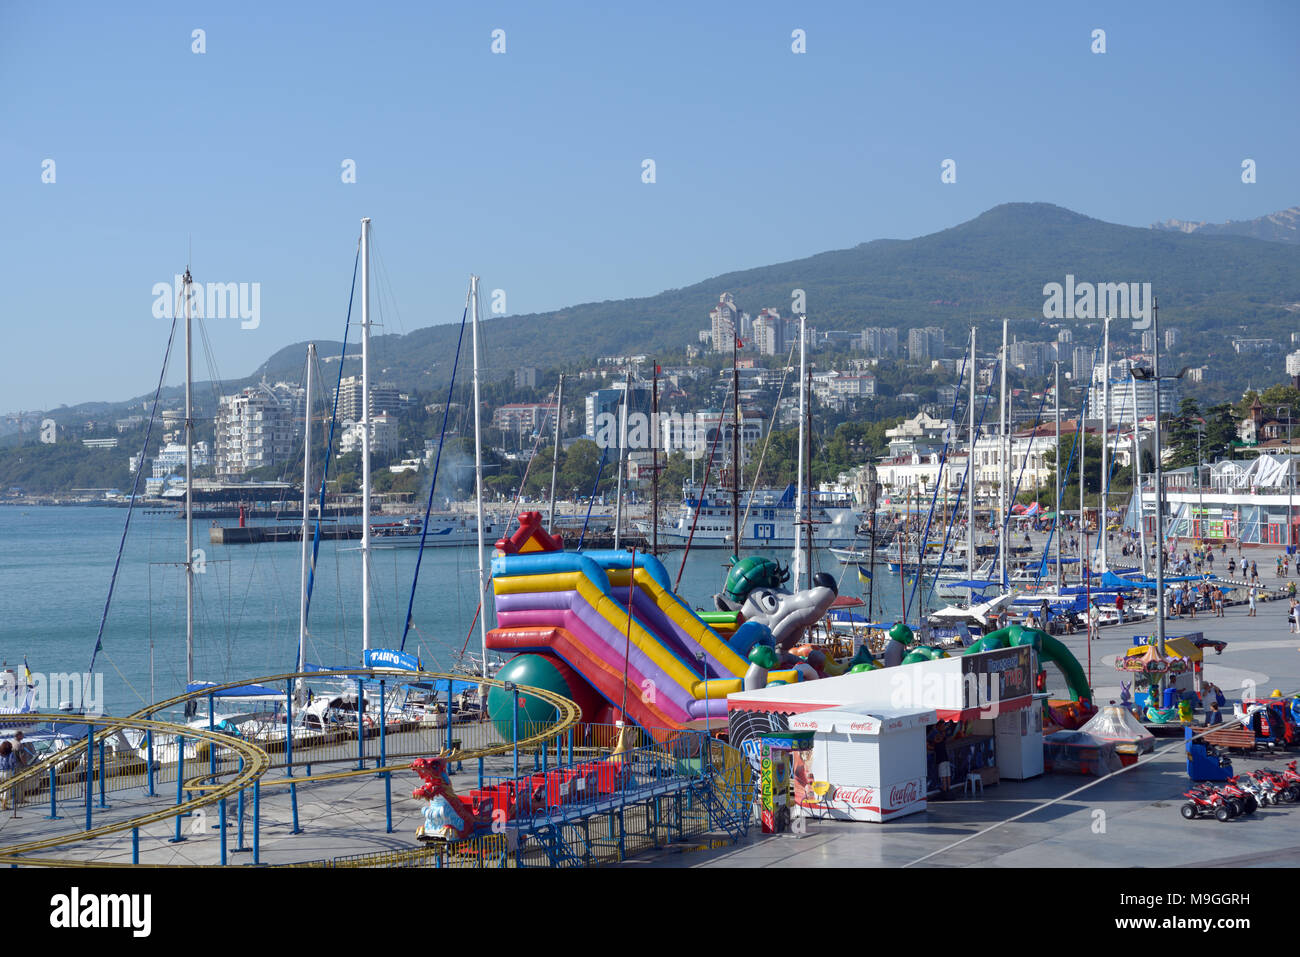 Attrazioni di divertimento nel porto di Yalta, Crimea, Ucraina Foto Stock